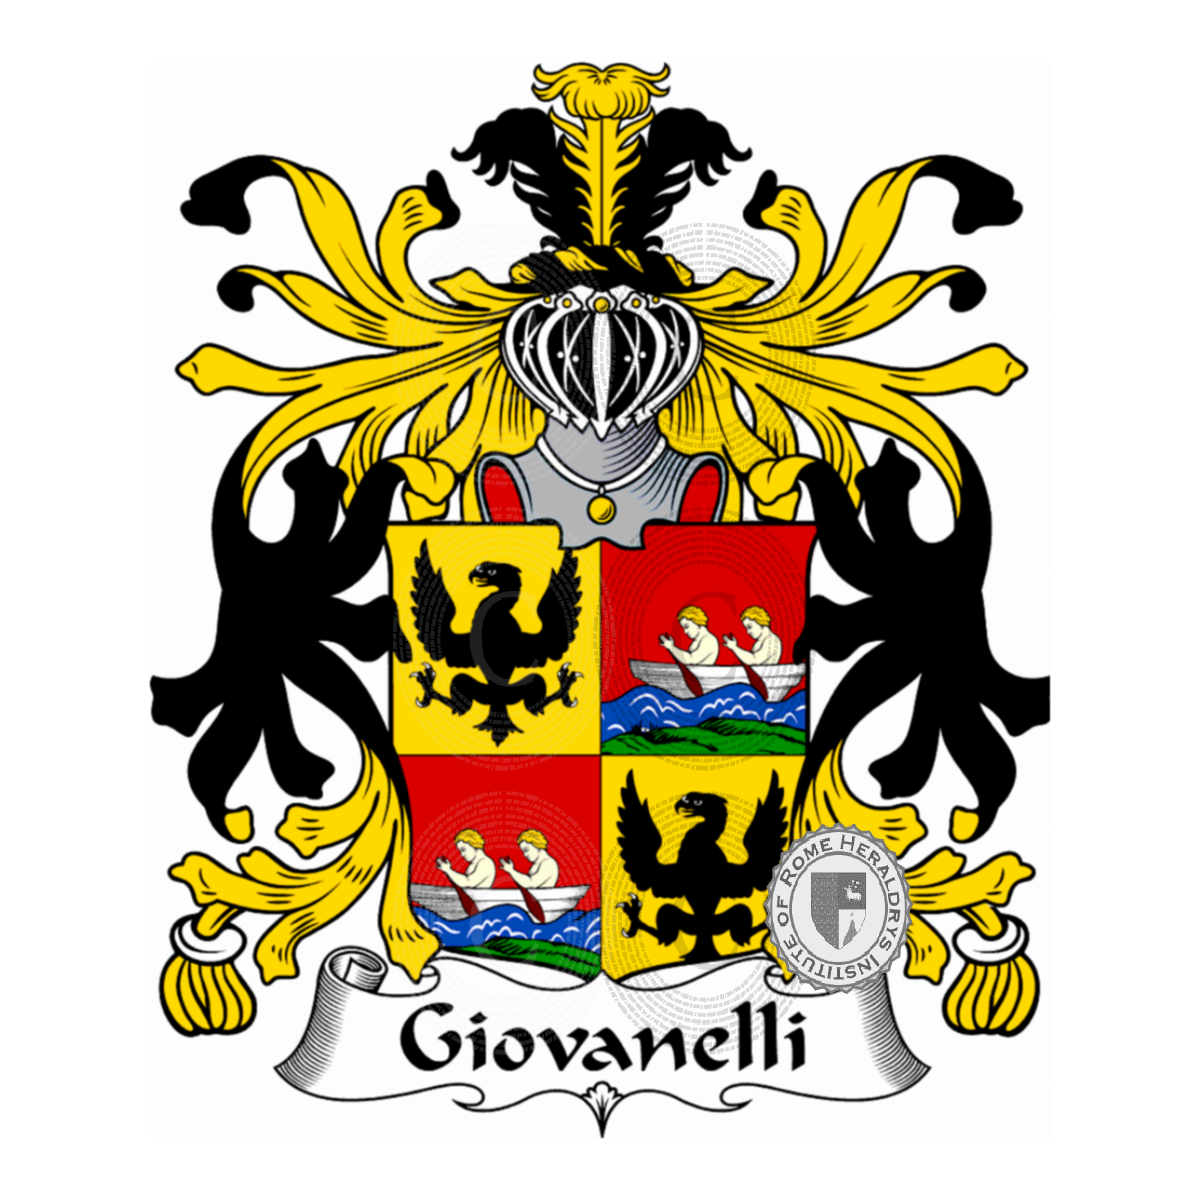 Escudo de la familiaGiovanelli, Giovanelli zu Gerstburg,Giovannelli